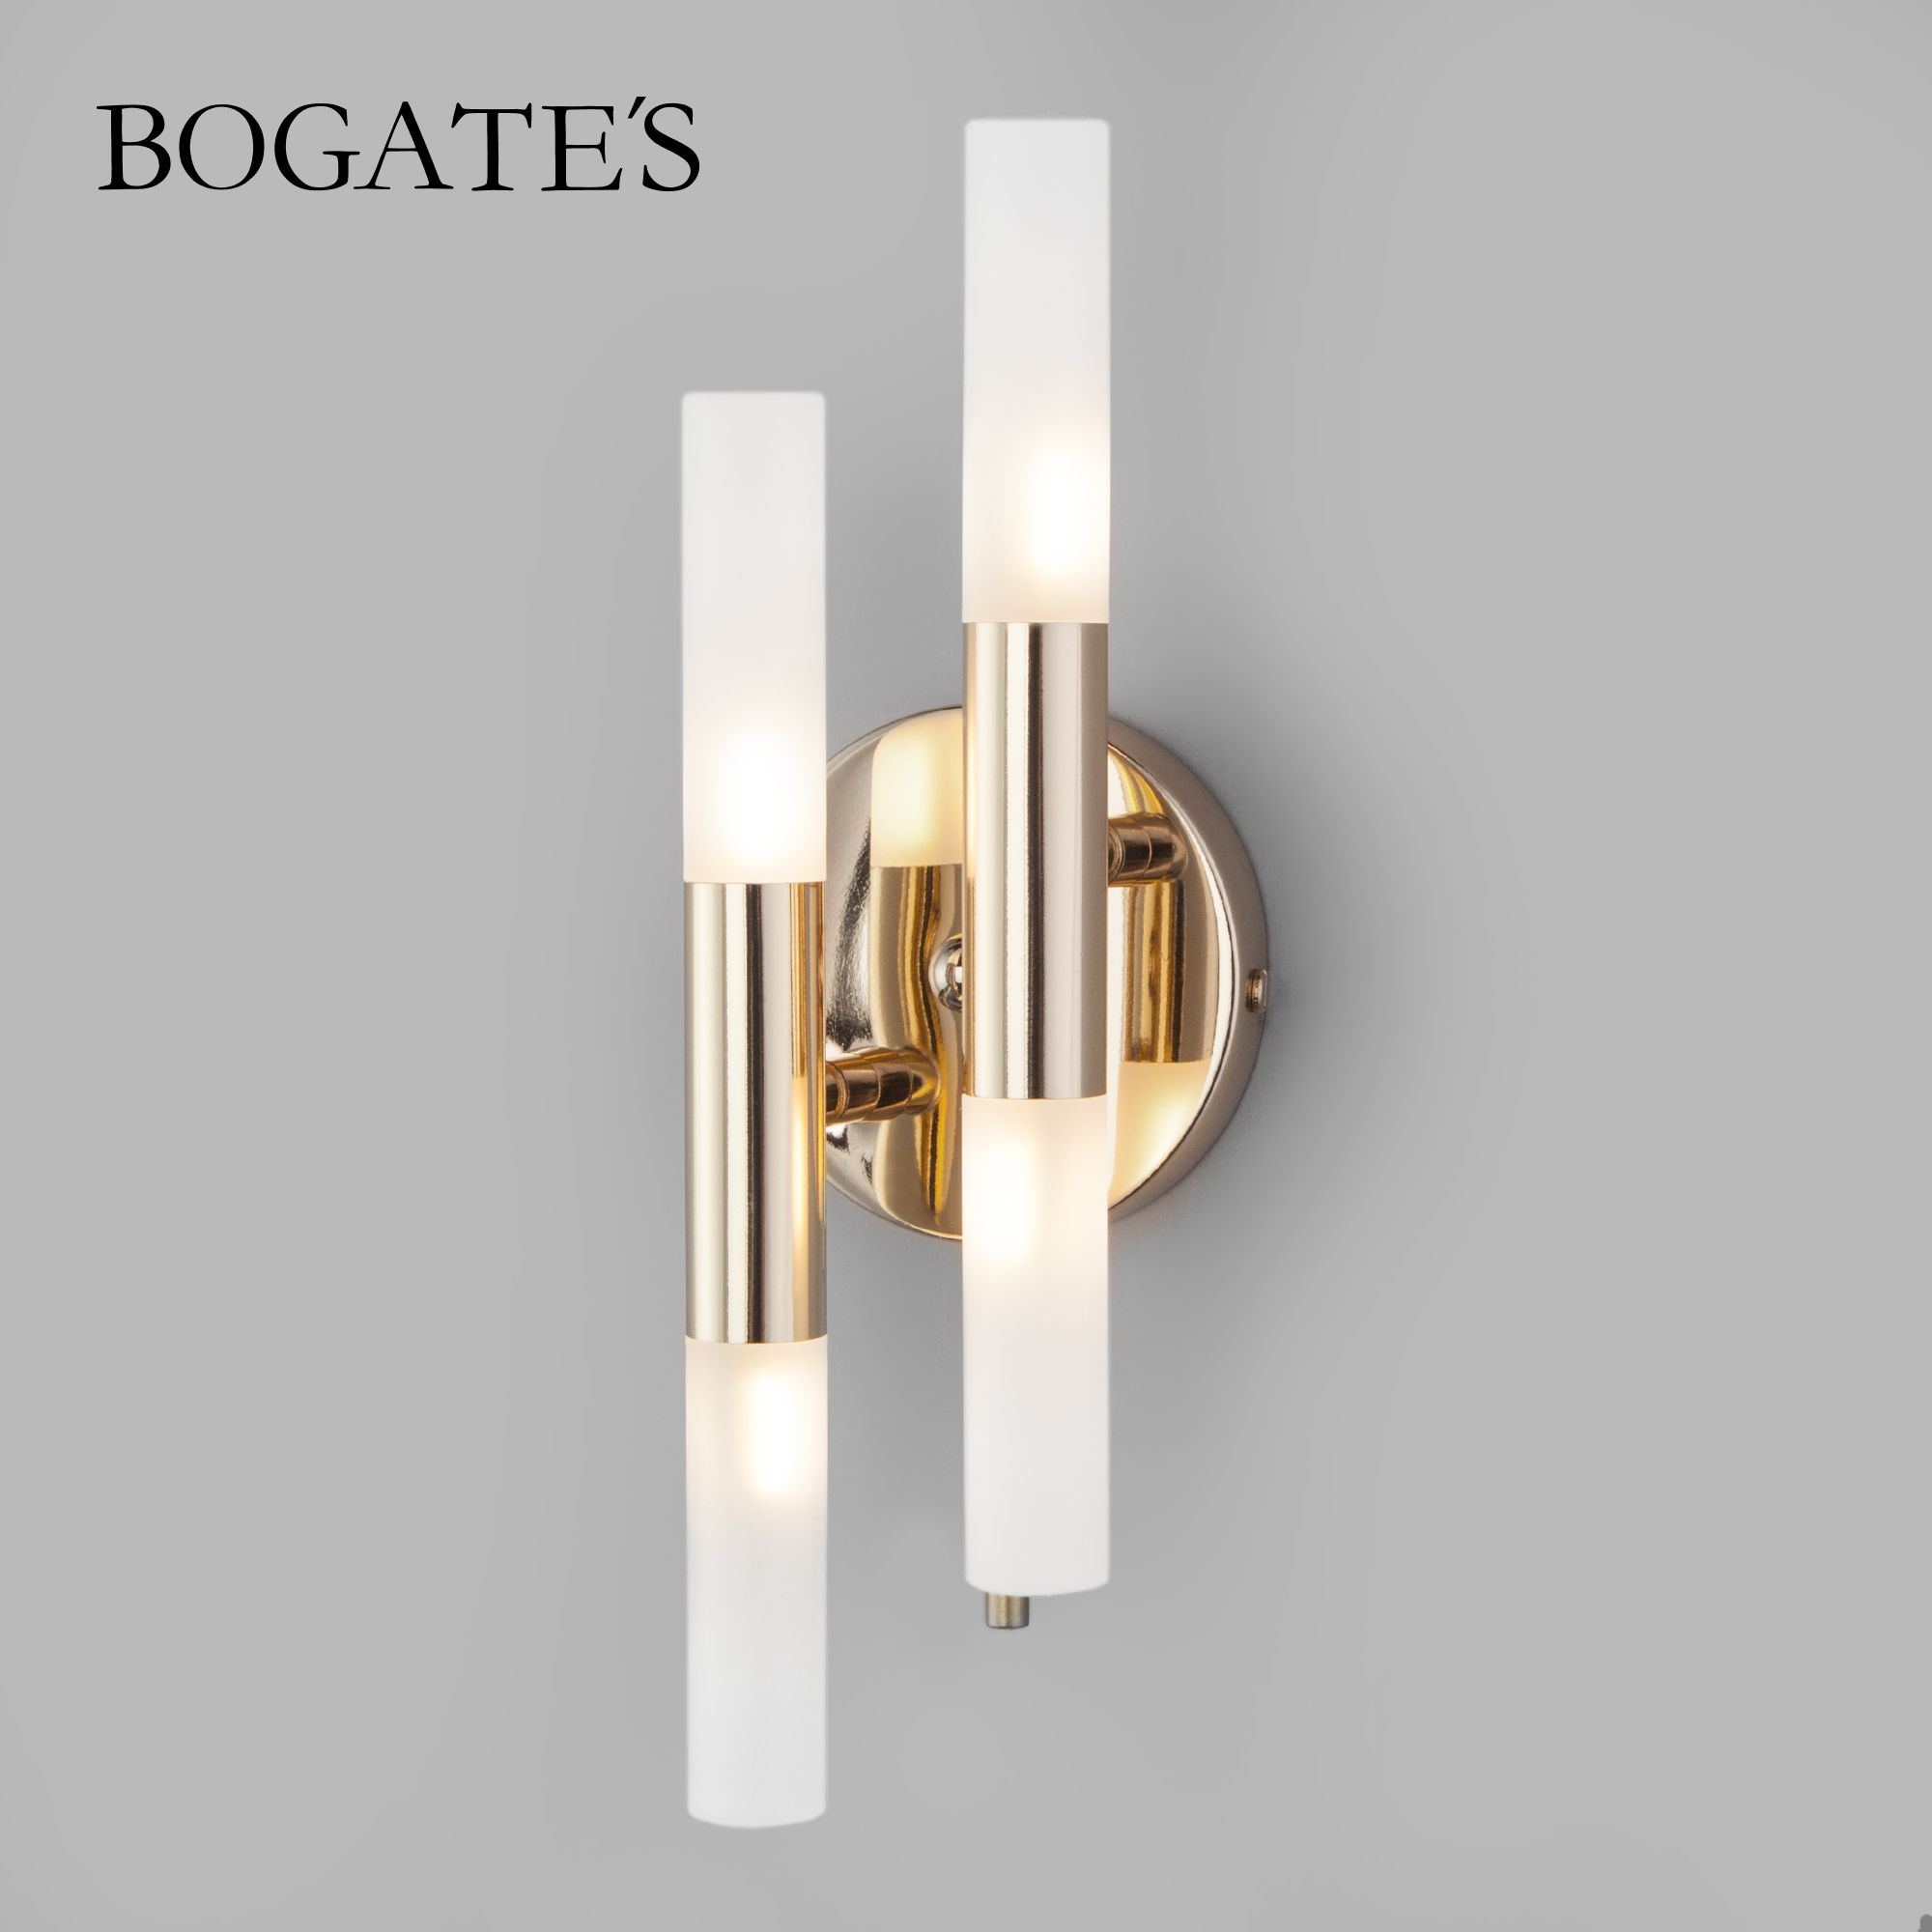 Настенный светильник Bogate's 351/4 (570/4)